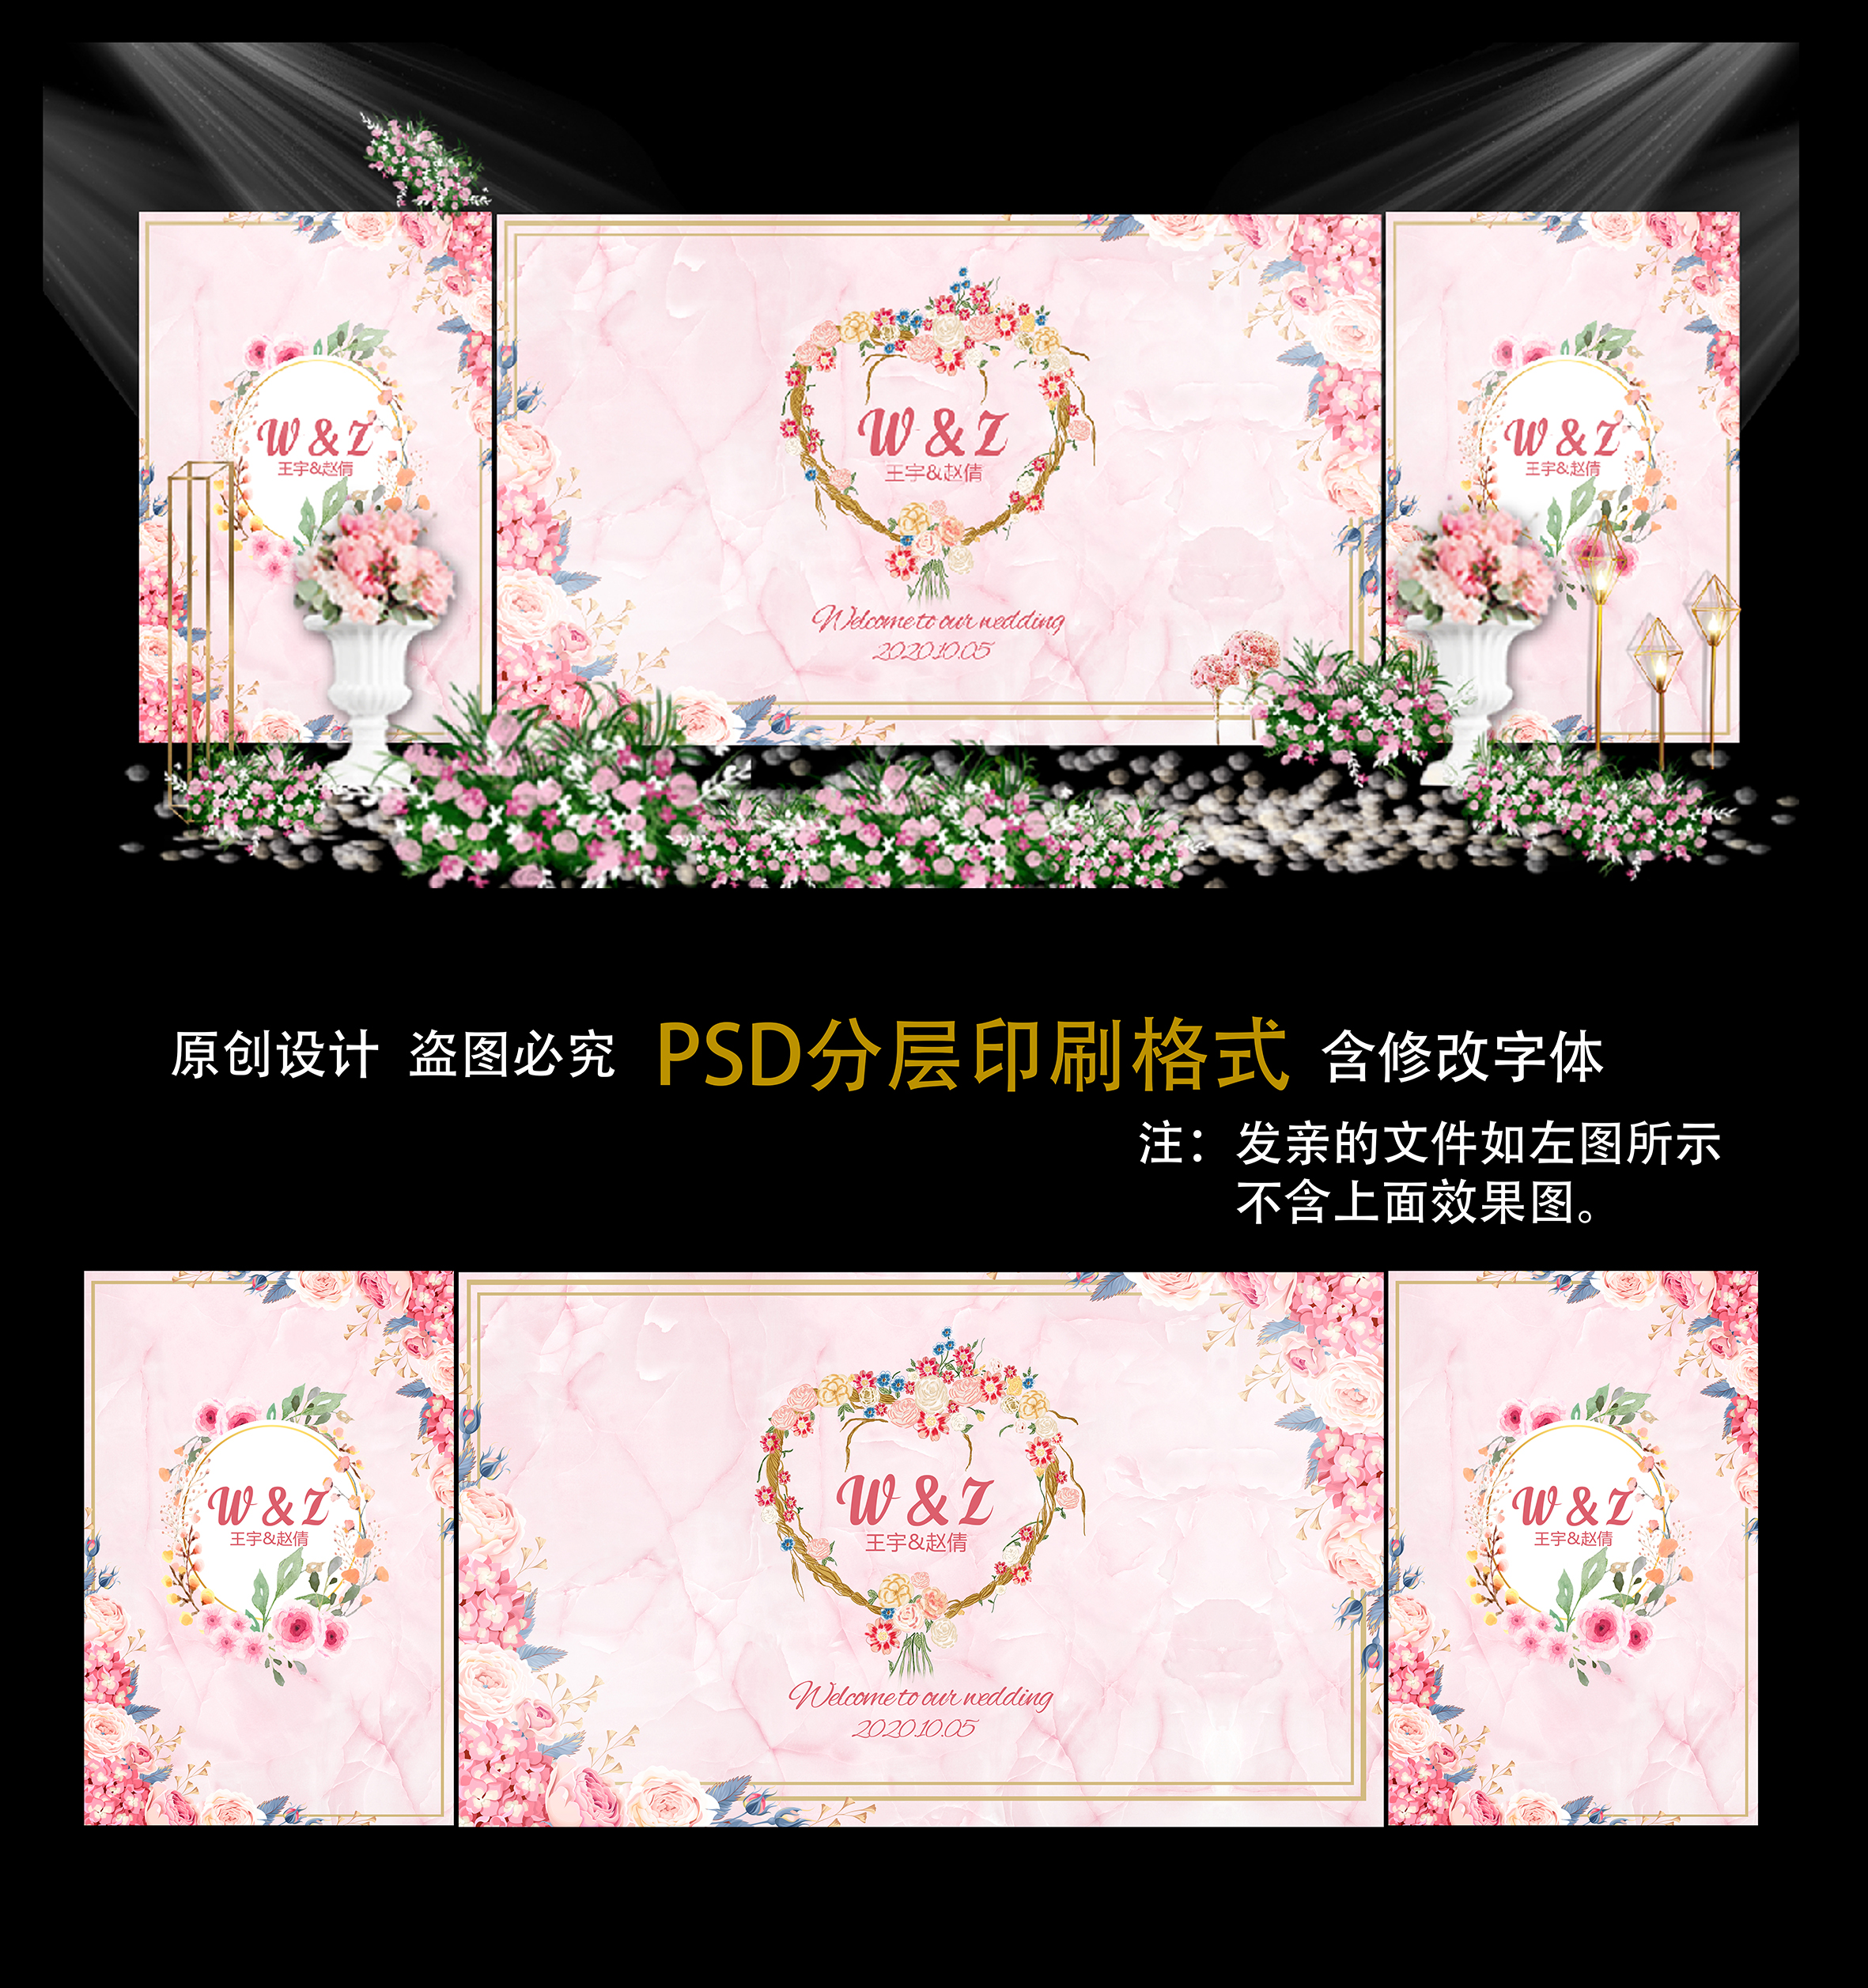 小清新粉色大理石婚礼背景设计喷绘kt板设计psd源素材z03